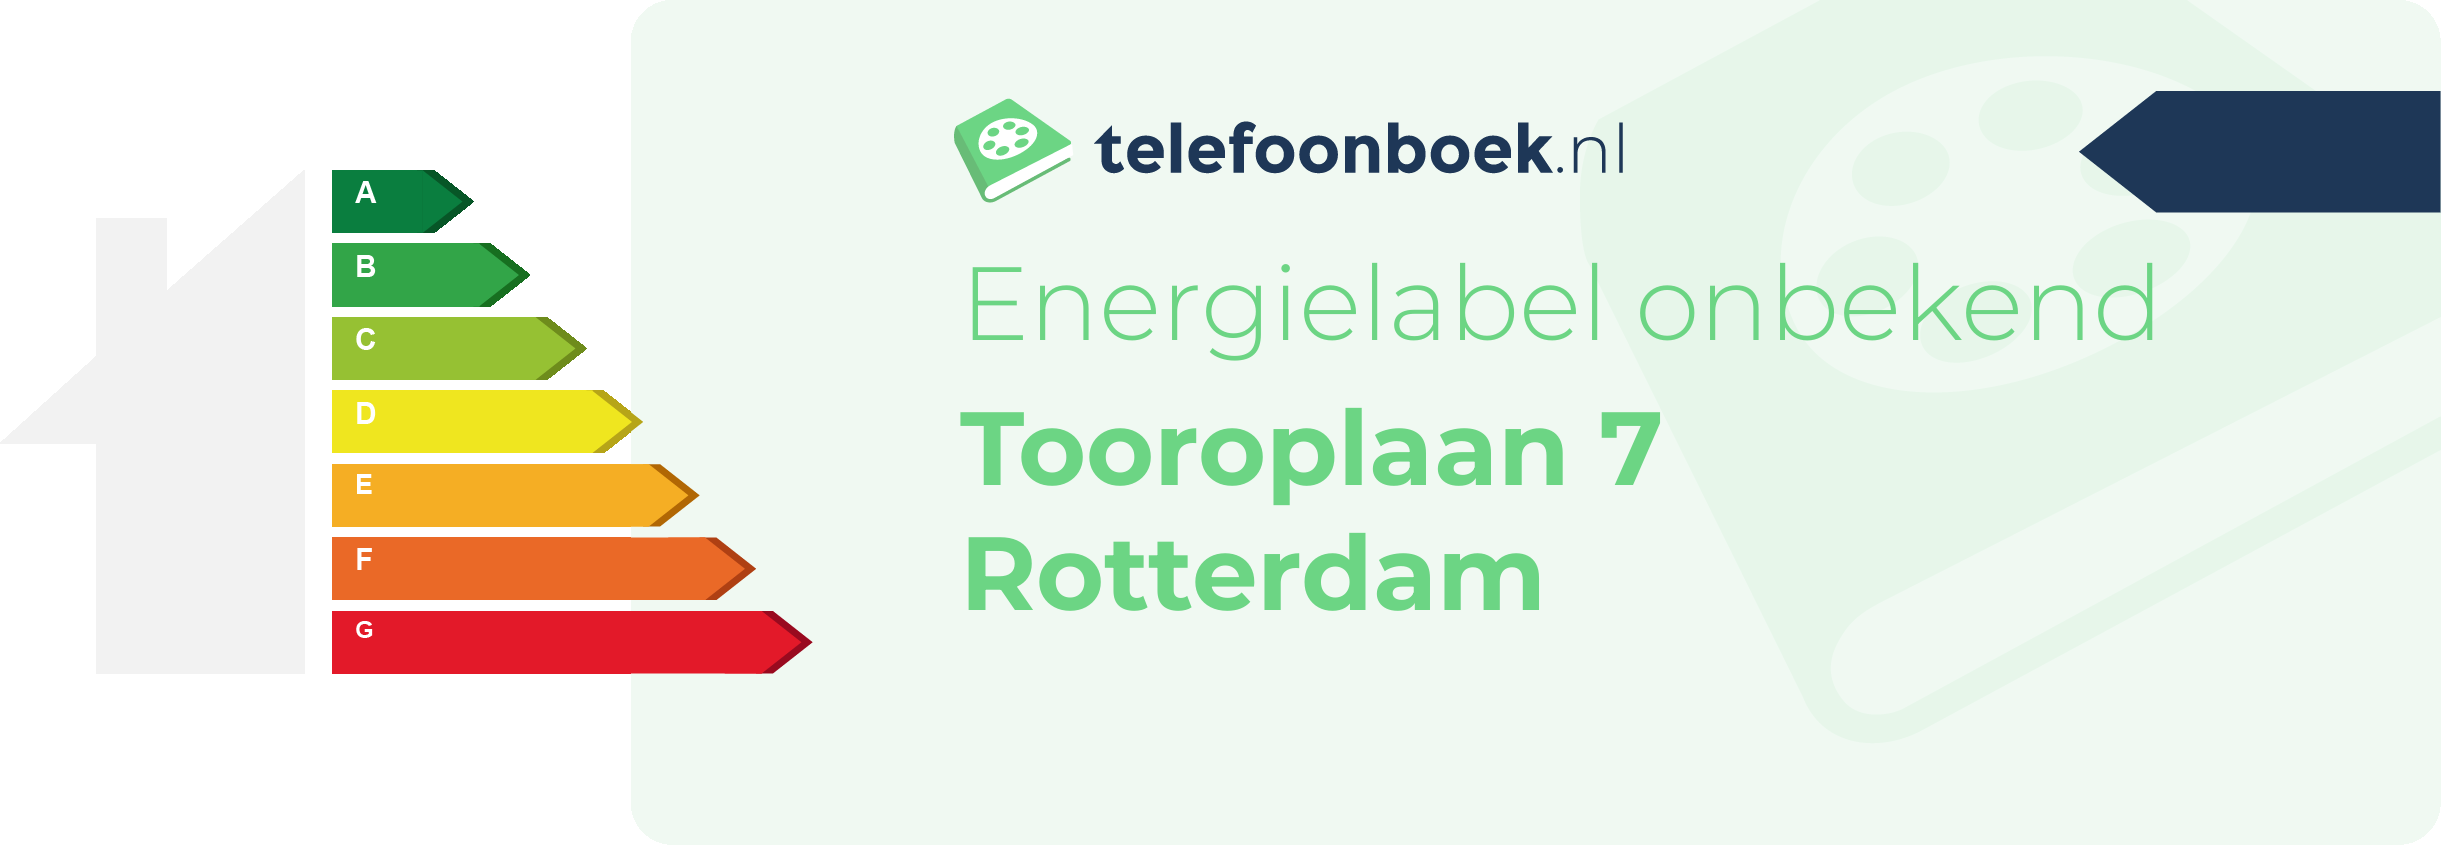 Energielabel Tooroplaan 7 Rotterdam